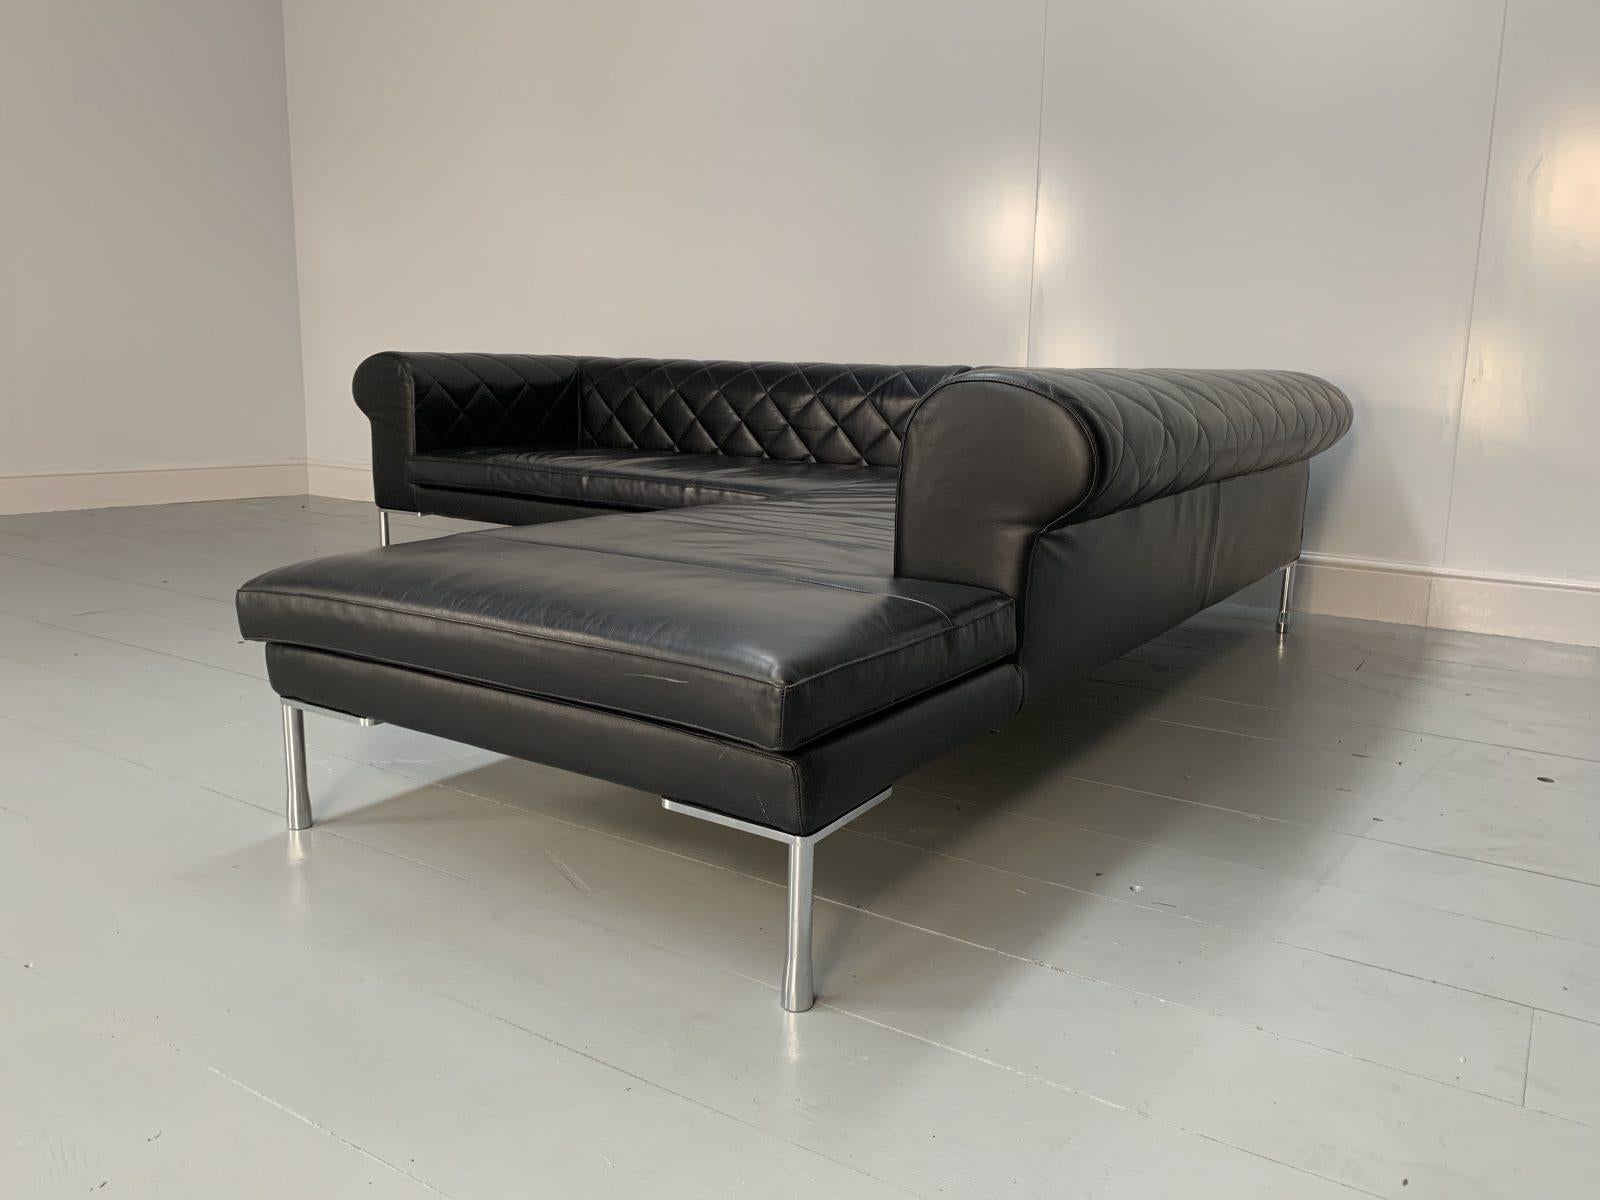 Zanotta “1320 Barocco” Sofa, L- Shape 5-Seat, in Black “Pelle” Leather For Sale 5